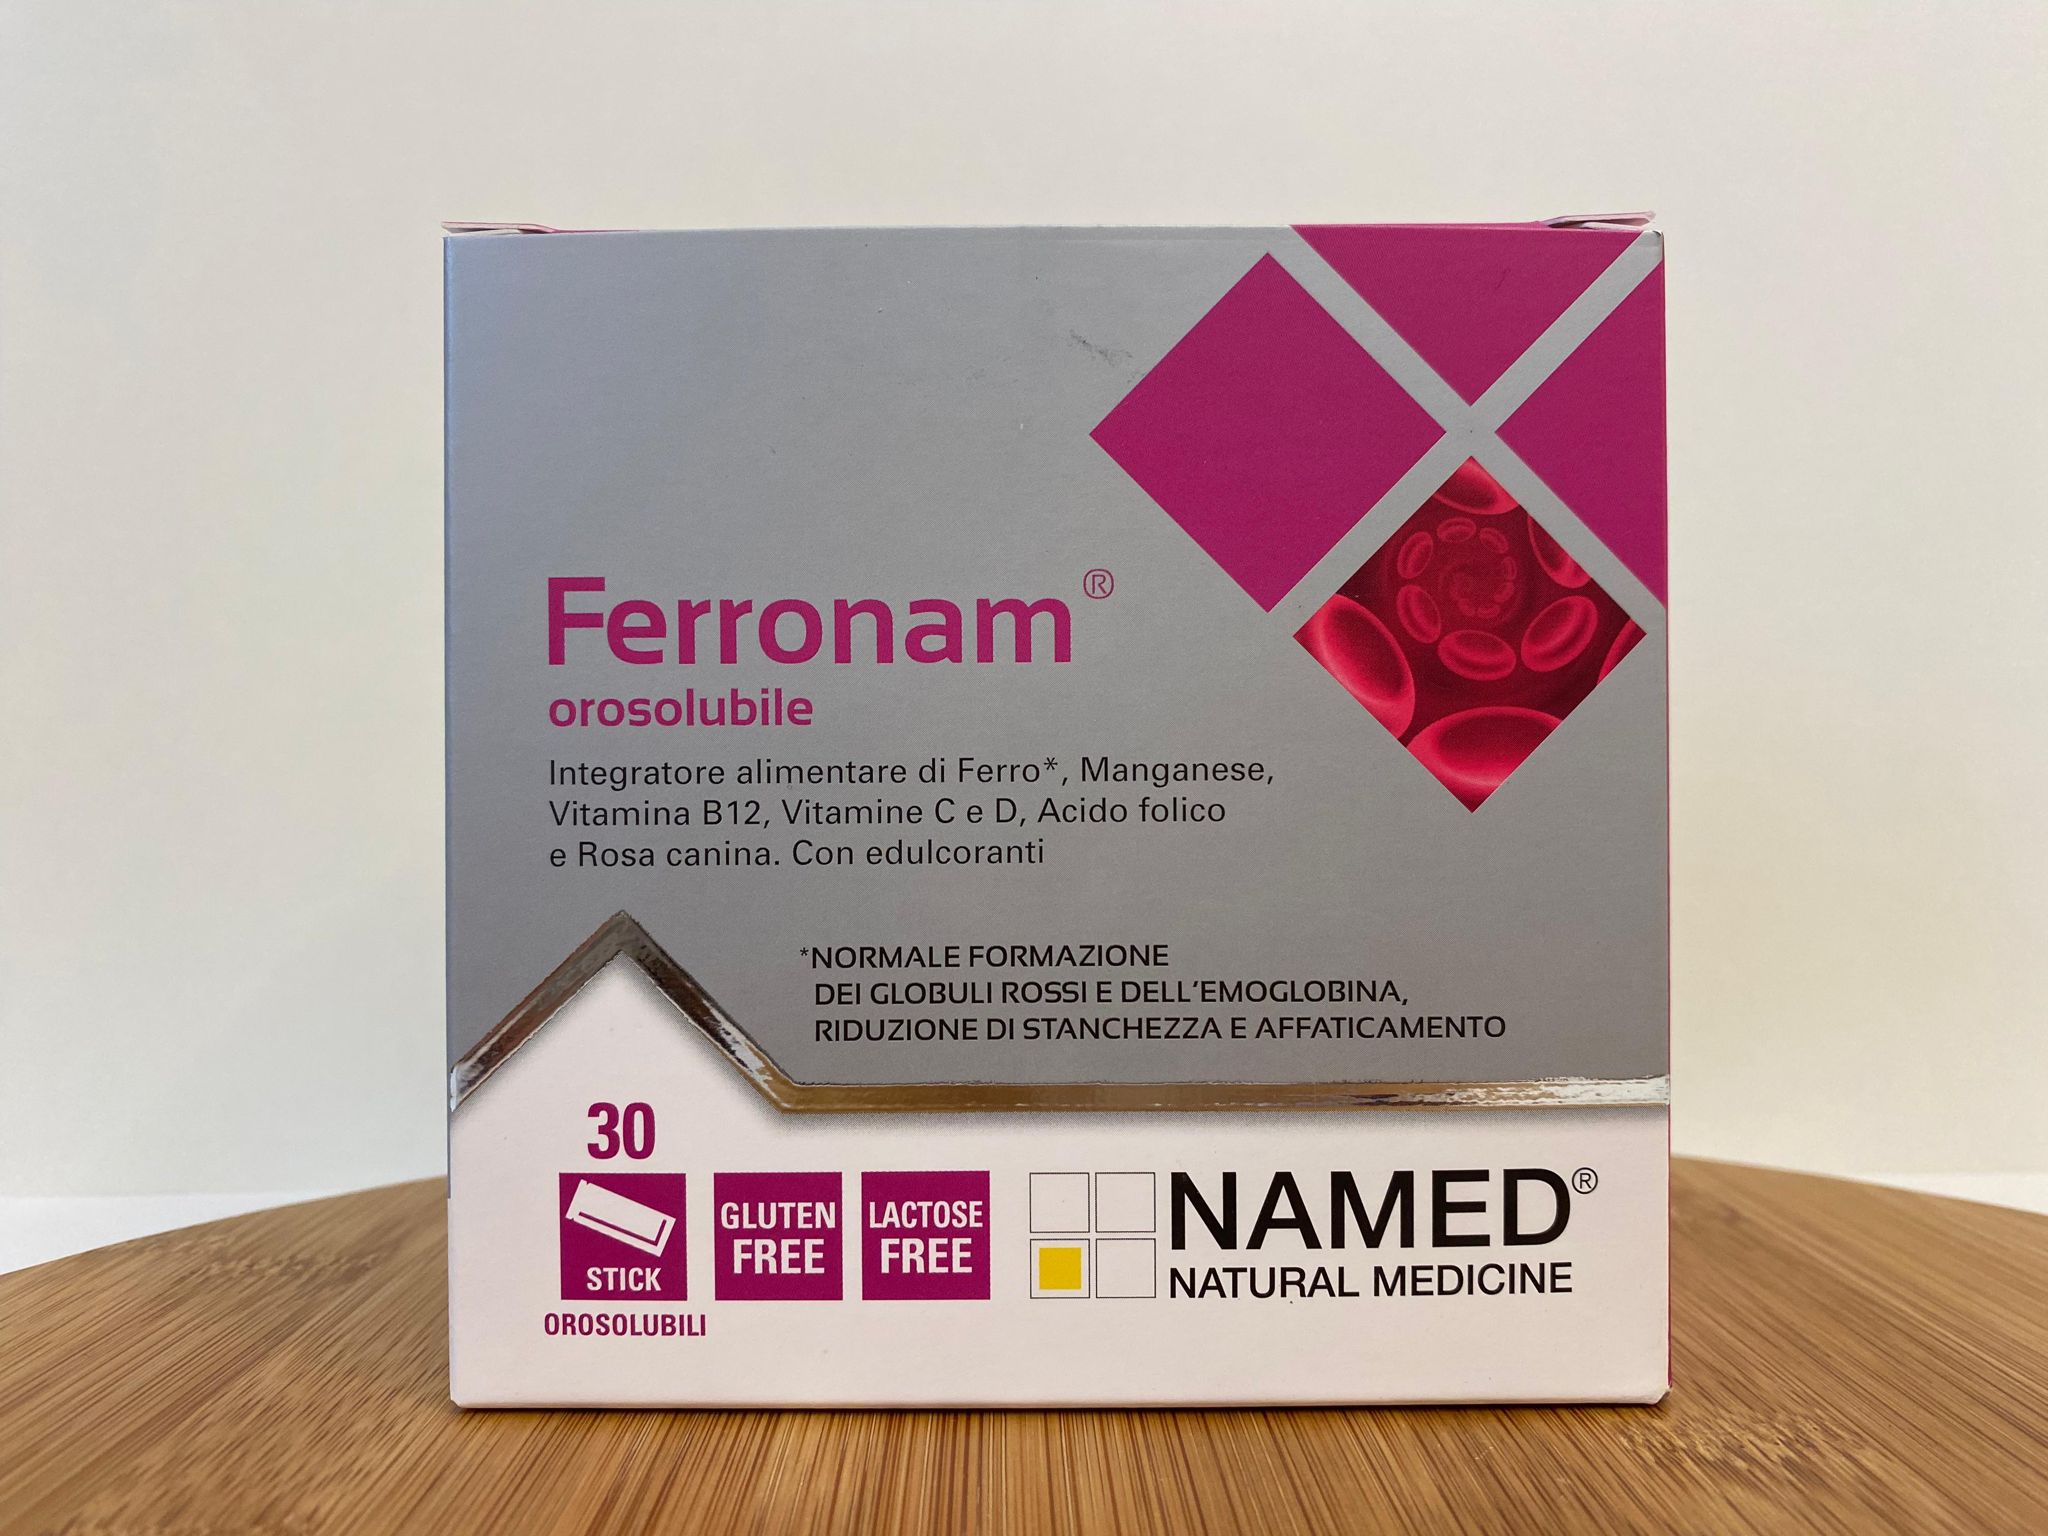 Named: Ferronam